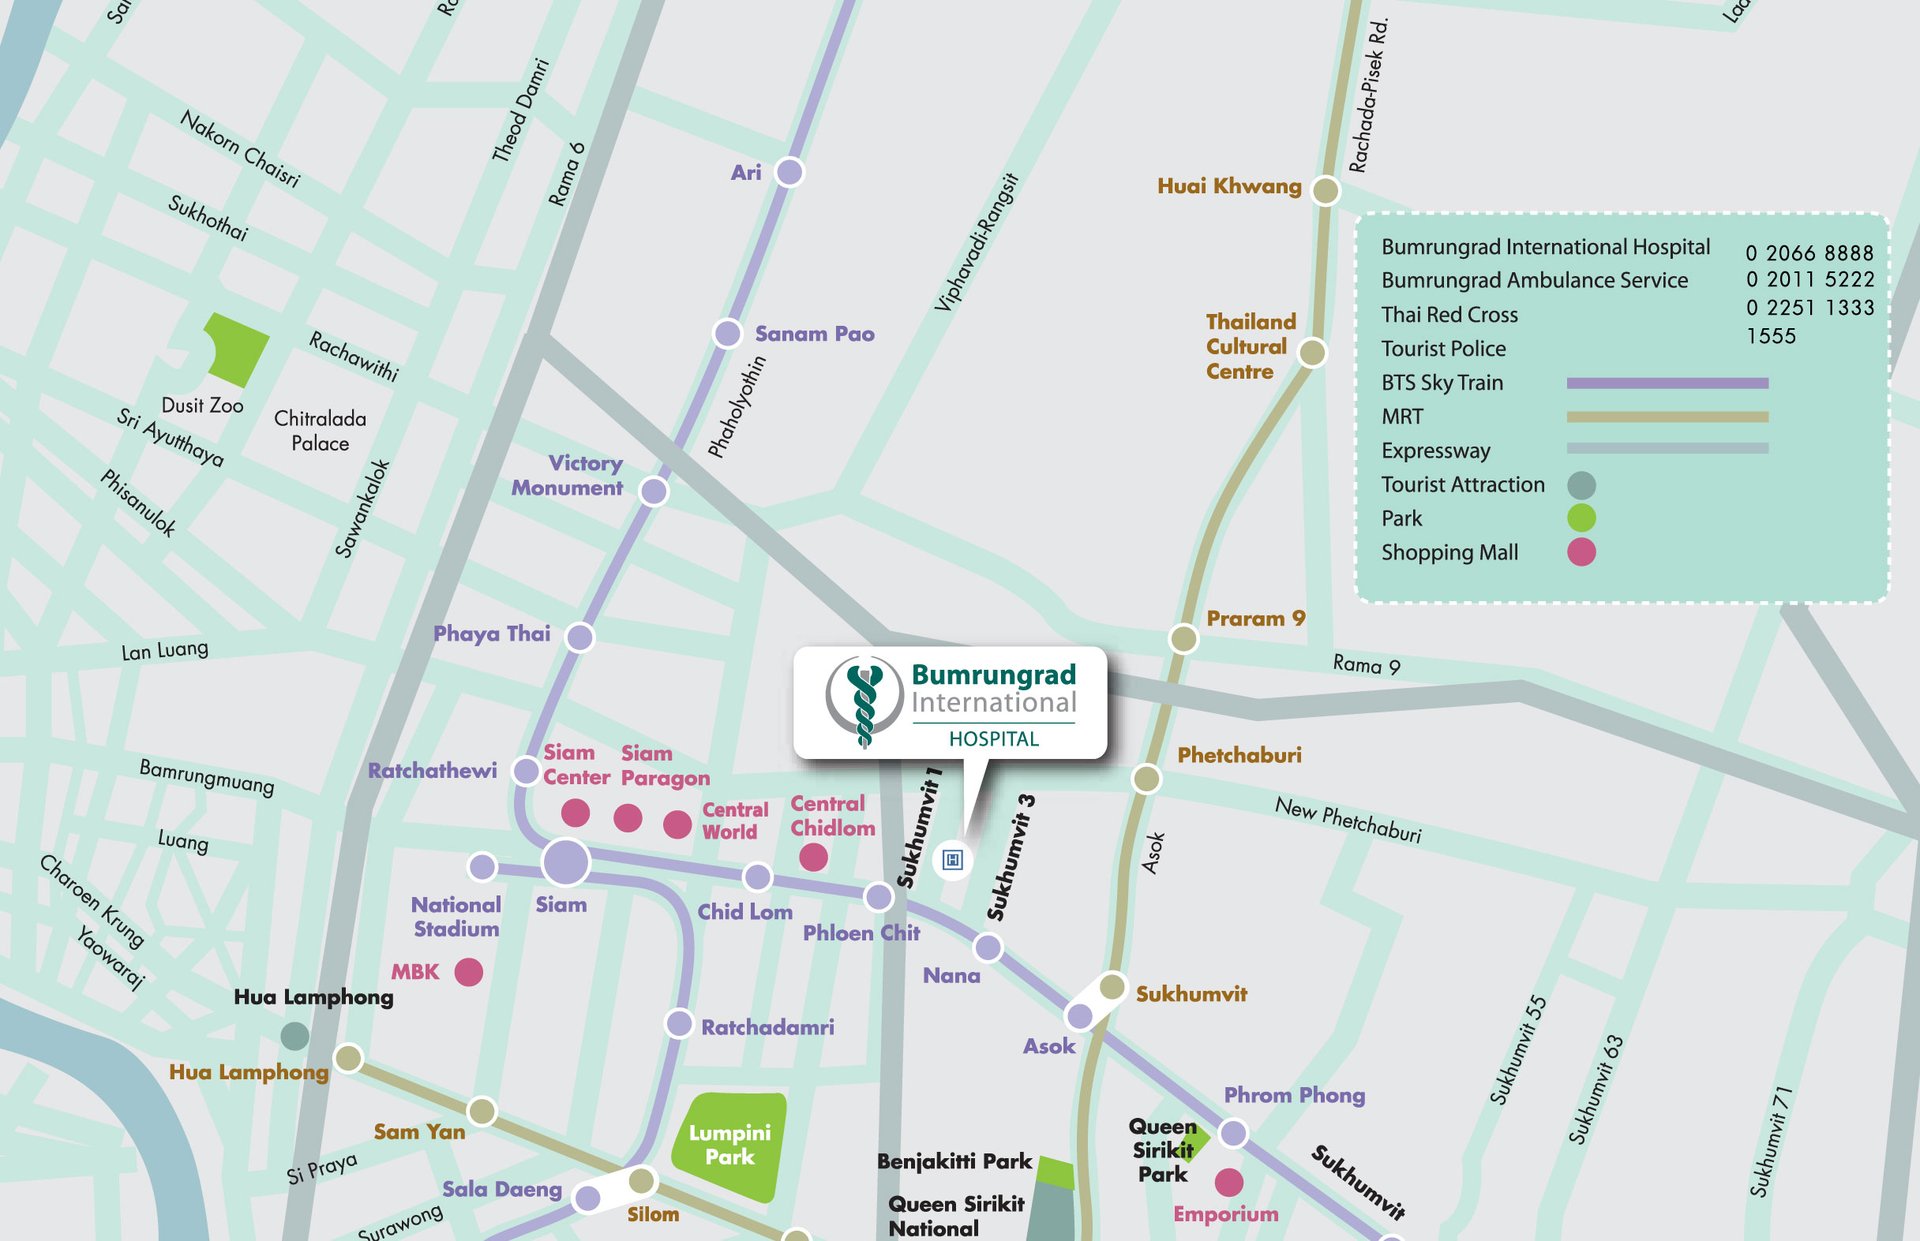 Bumrungrad International Hospital Bangkok Thailand Map and Direction